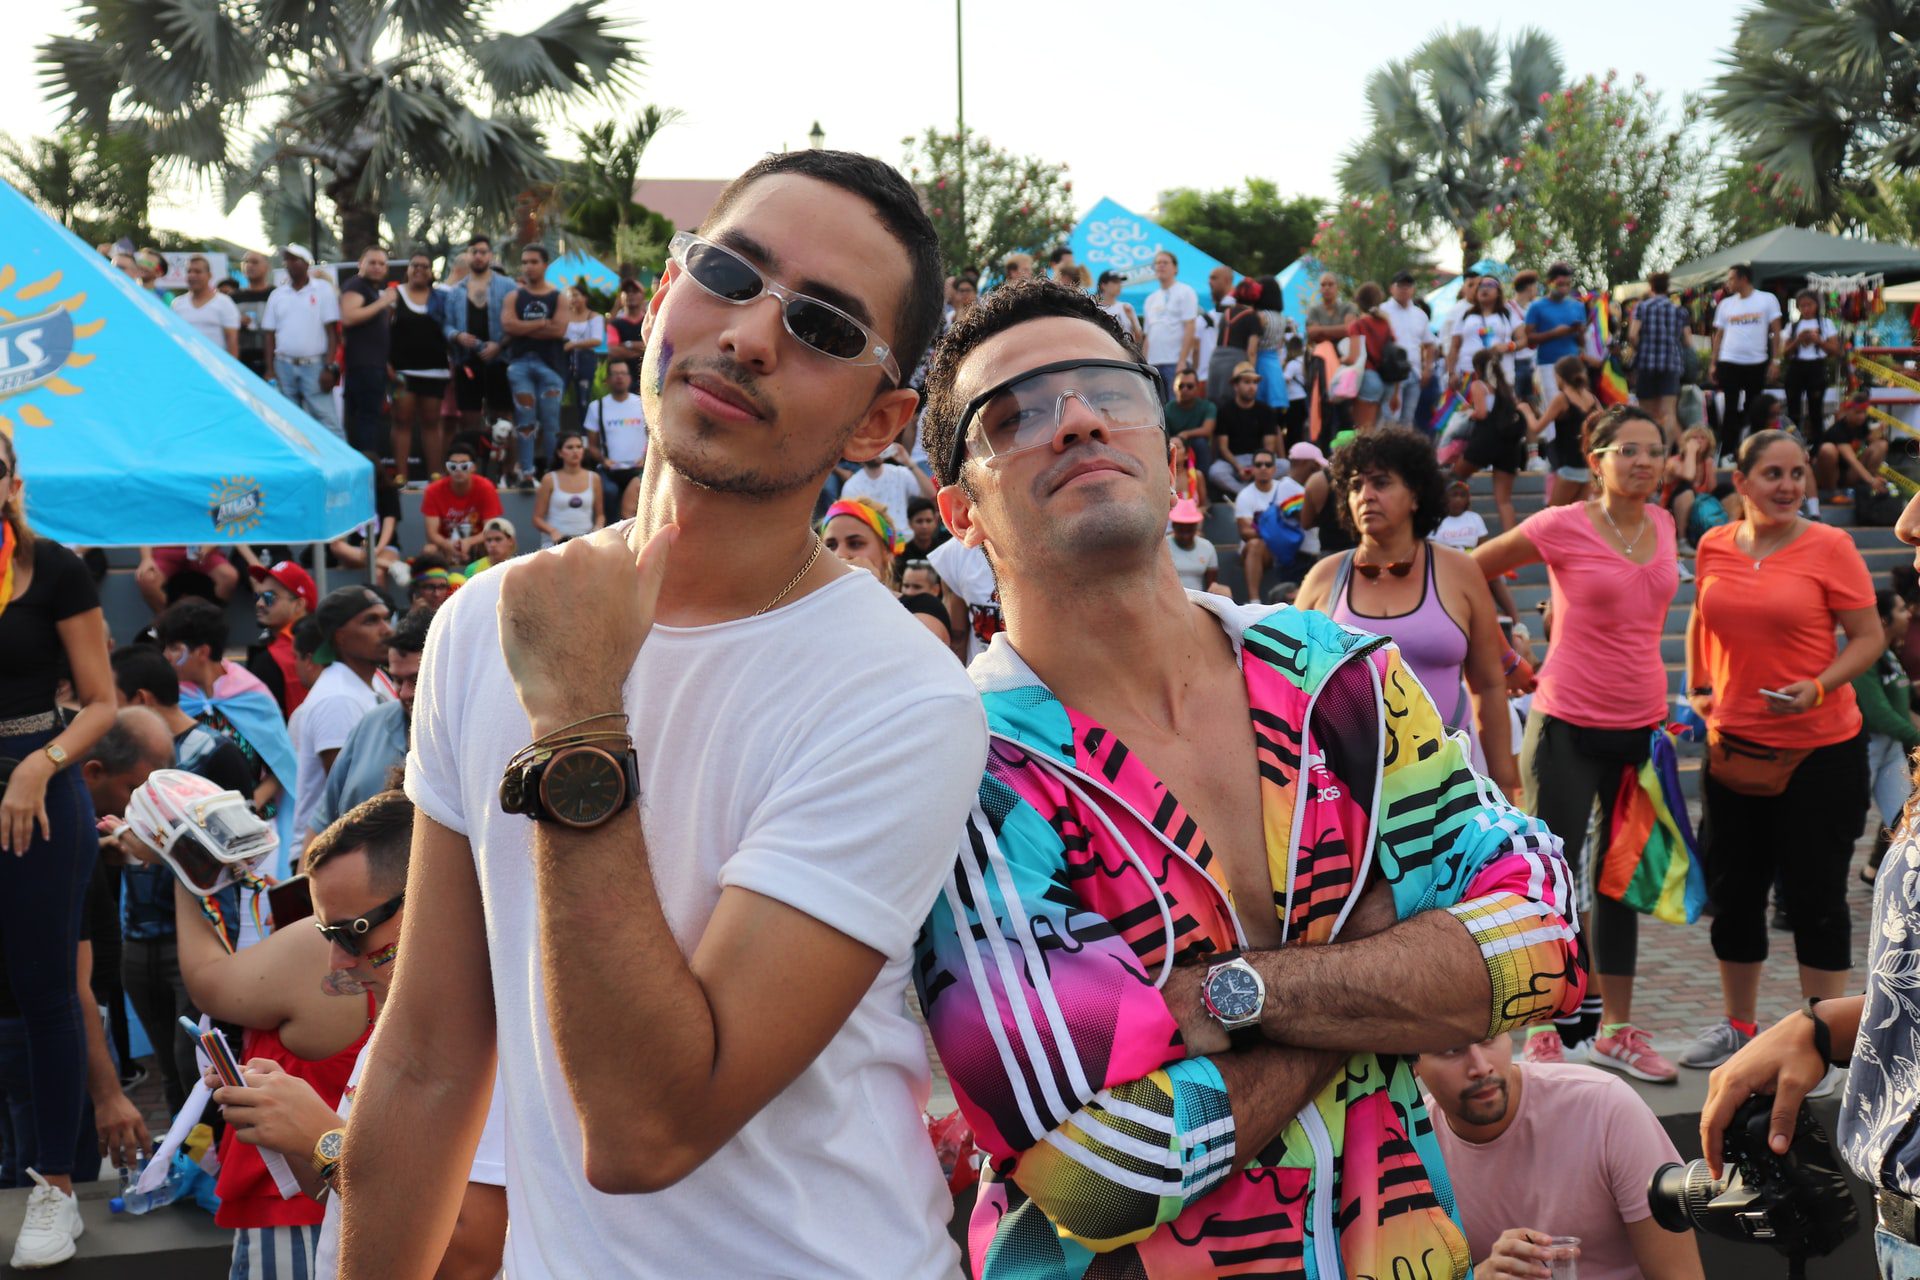 Voyage gay-friendly : la Gay Pride de Madrid est la plus grande d'Europe